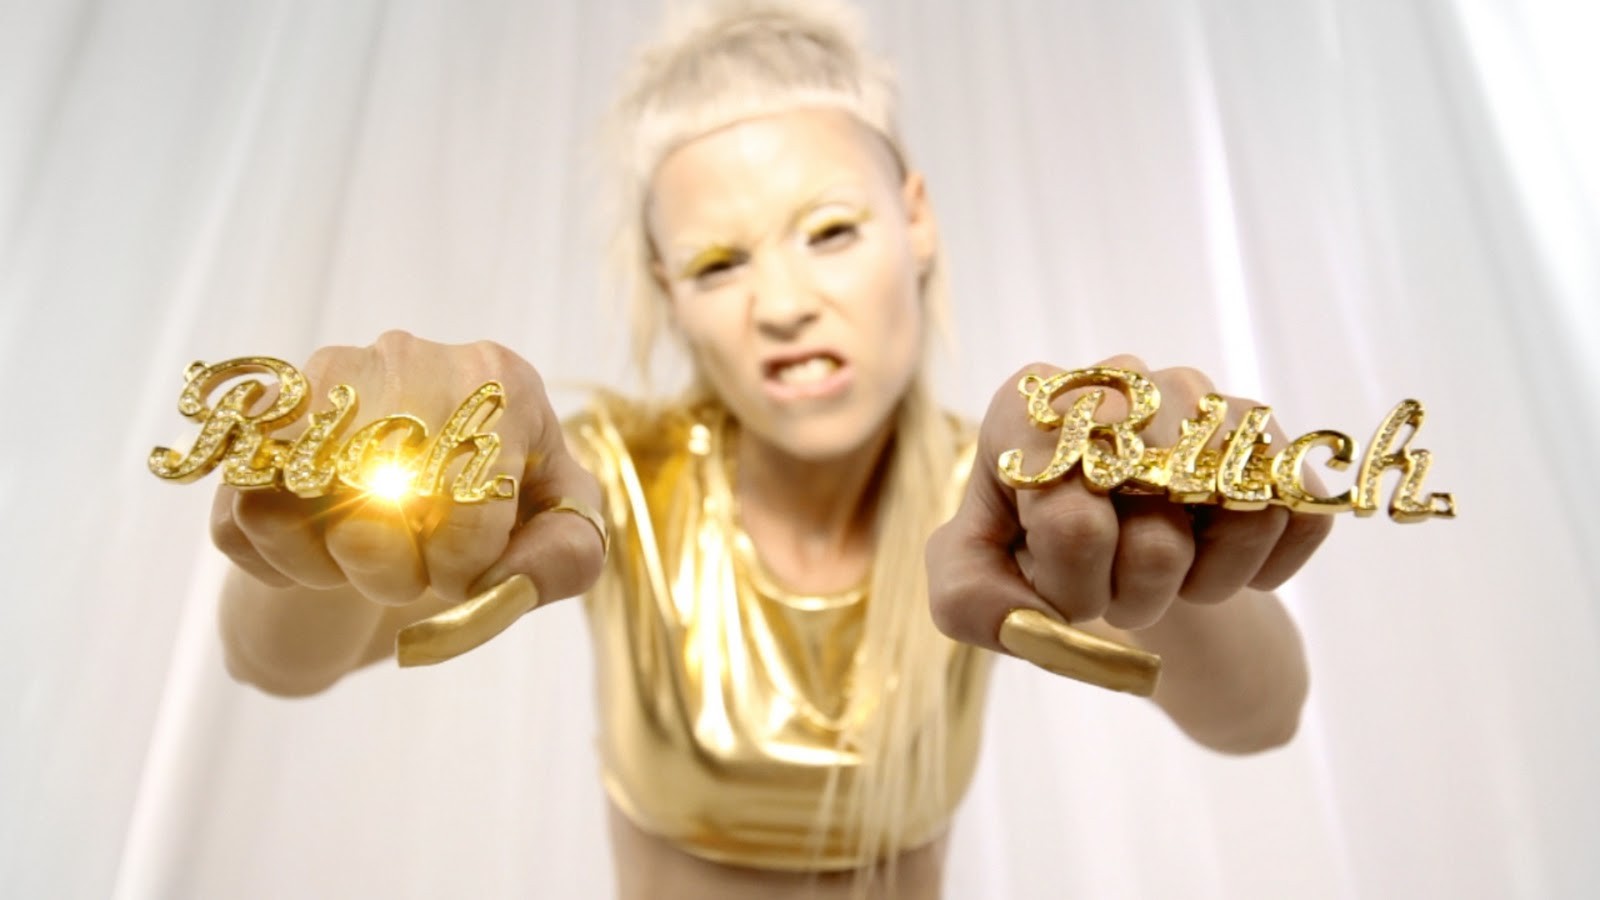 Кадр из клипа Die Antwoord "Rich Bitch"